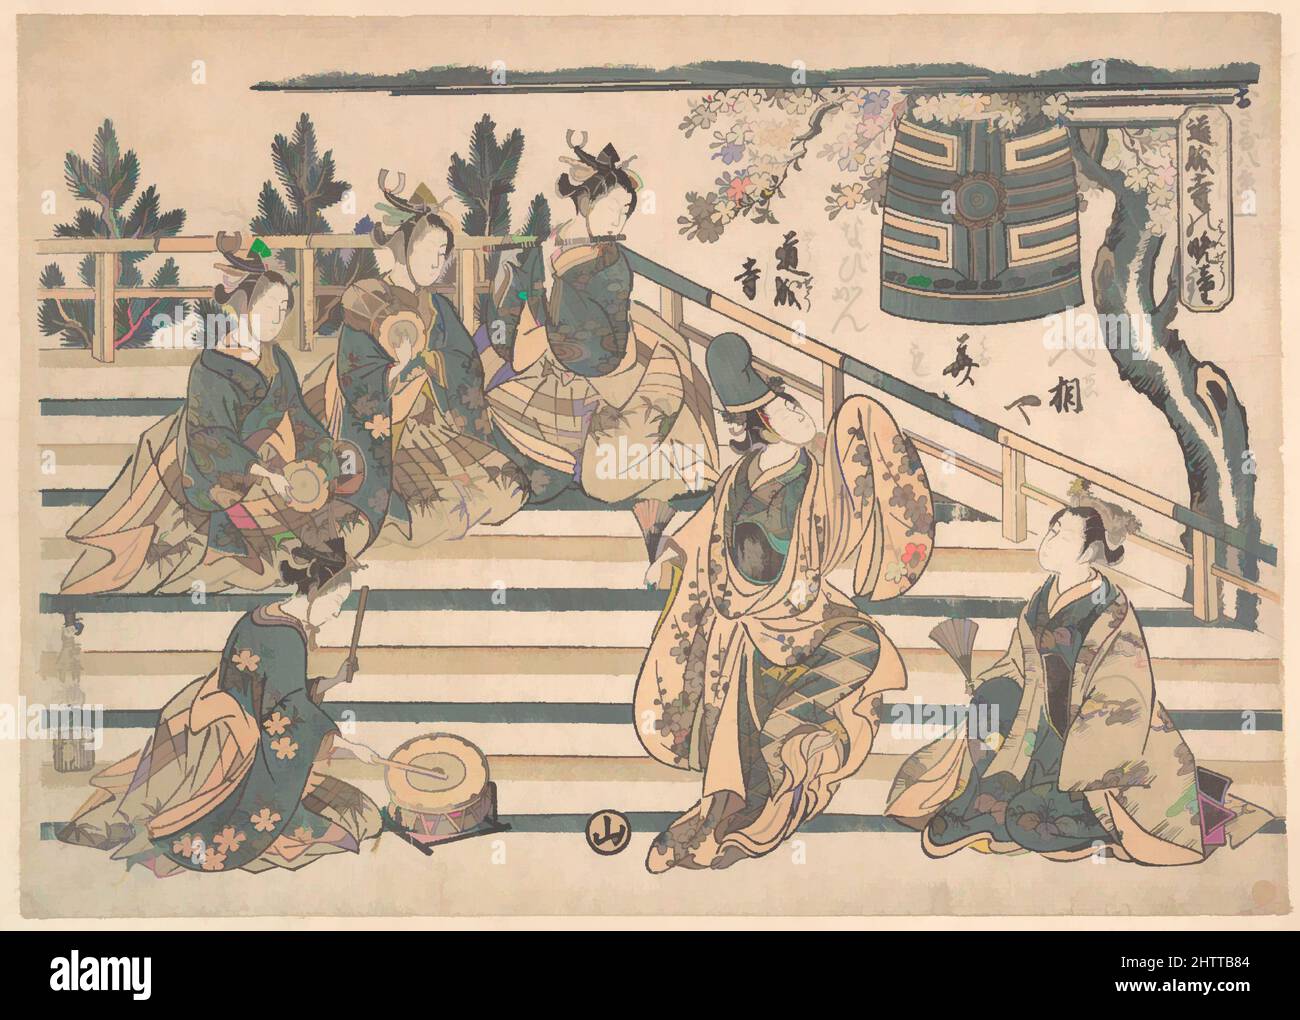 Arte ispirata al Curfew di Dōjōji, periodo Edo (1615-1868), ca. 1763, Giappone, stampa a blocchi di legno policromi; inchiostro e colore su carta, 12 7/32 x 17 pollici (31,1 x 43,2 cm), Prints, Torii Kiyomitsu (giapponese, 1735–1785), su una piattaforma di un ciliegio, dai rami fioriti di cui a, opere classiche modernizzate da Artotop con un tuffo di modernità. Forme, colore e valore, impatto visivo accattivante sulle emozioni artistiche attraverso la libertà delle opere d'arte in modo contemporaneo. Un messaggio senza tempo che persegue una nuova direzione selvaggiamente creativa. Artisti che si rivolgono al supporto digitale e creano l'NFT Artotop Foto Stock